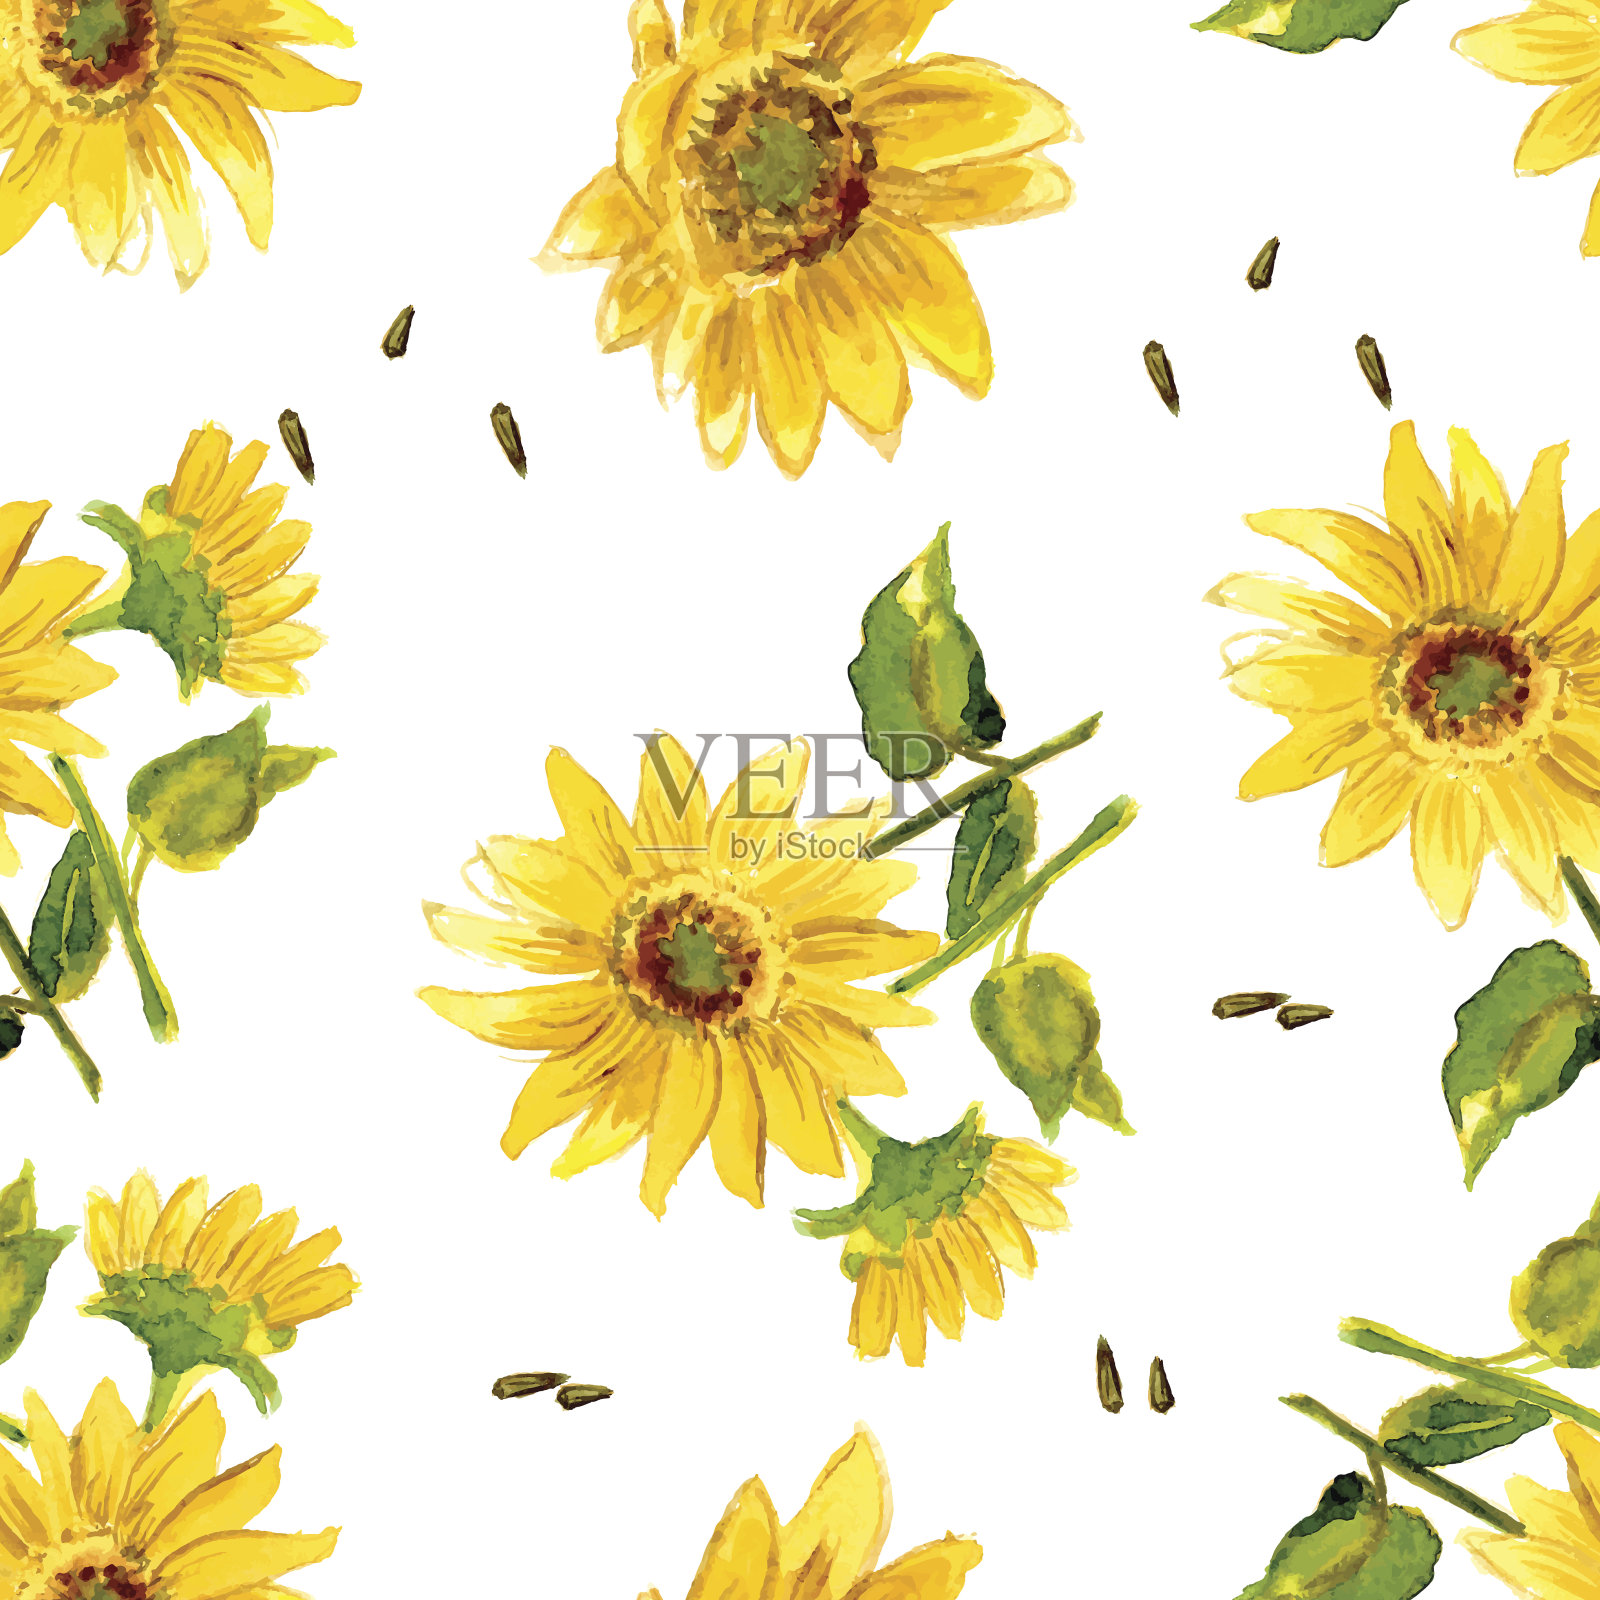 《黄色向日葵的组成》插画图片素材